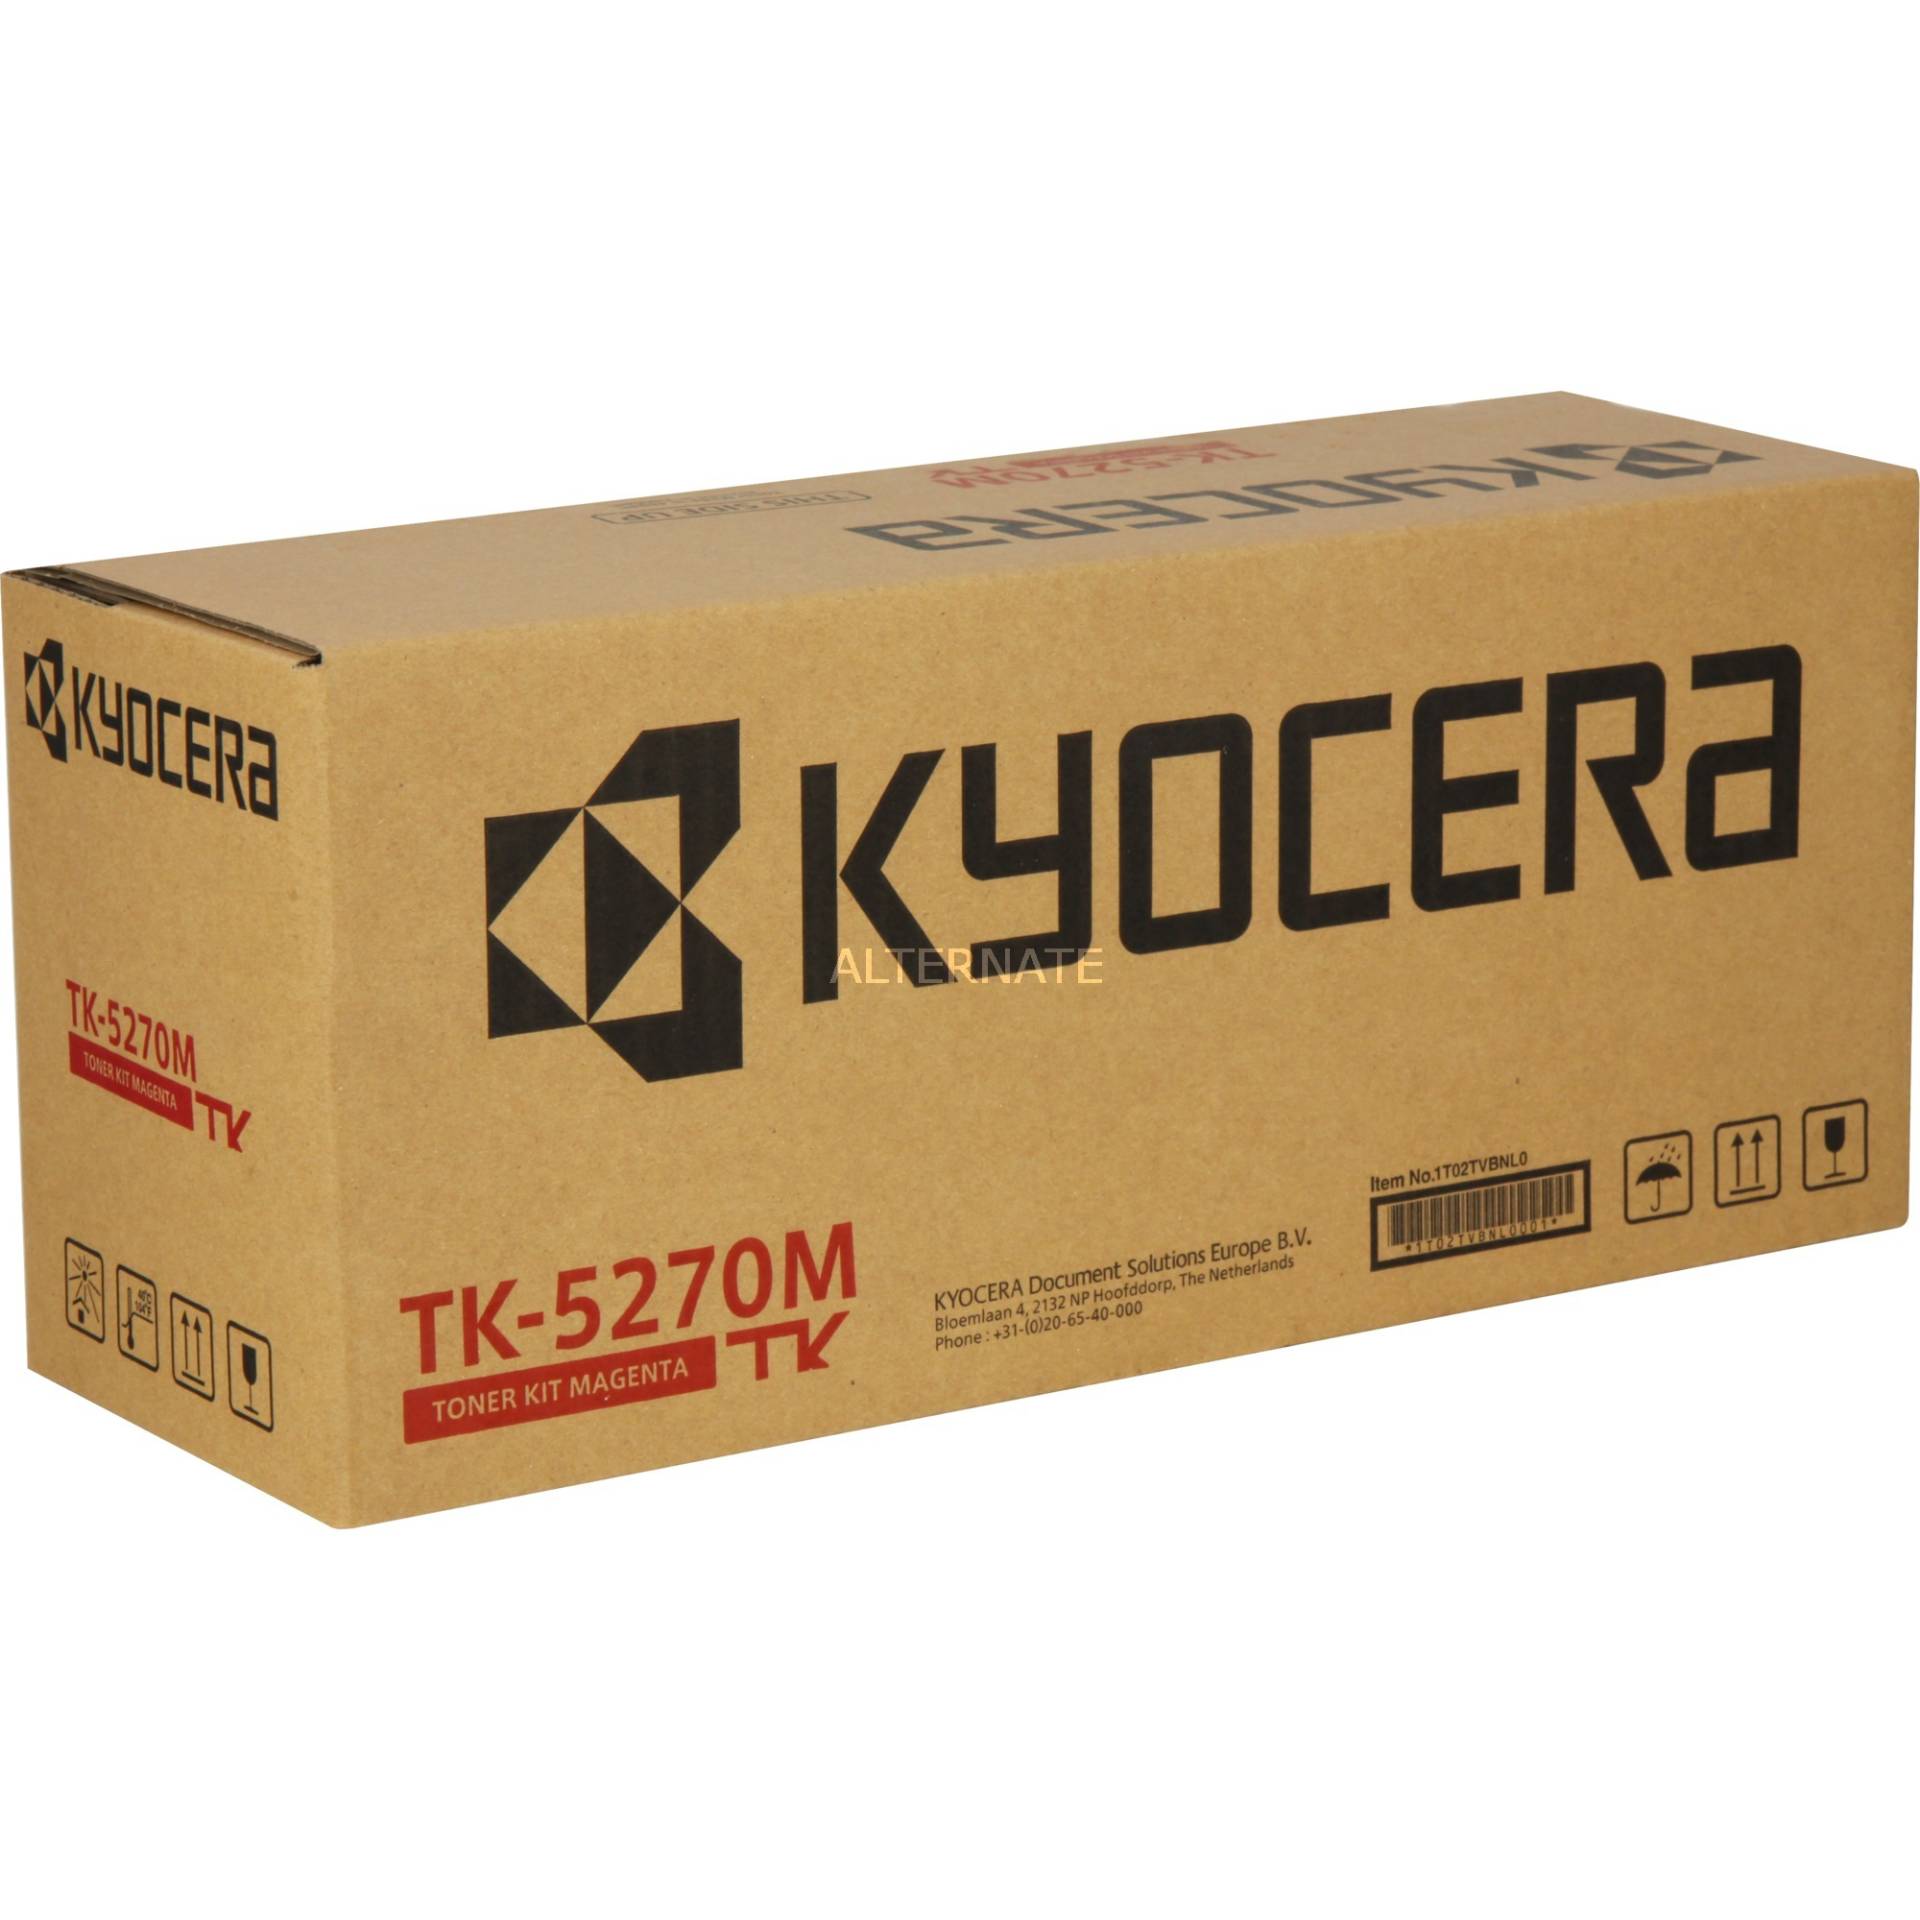 Toner magenta TK-5270M von Kyocera